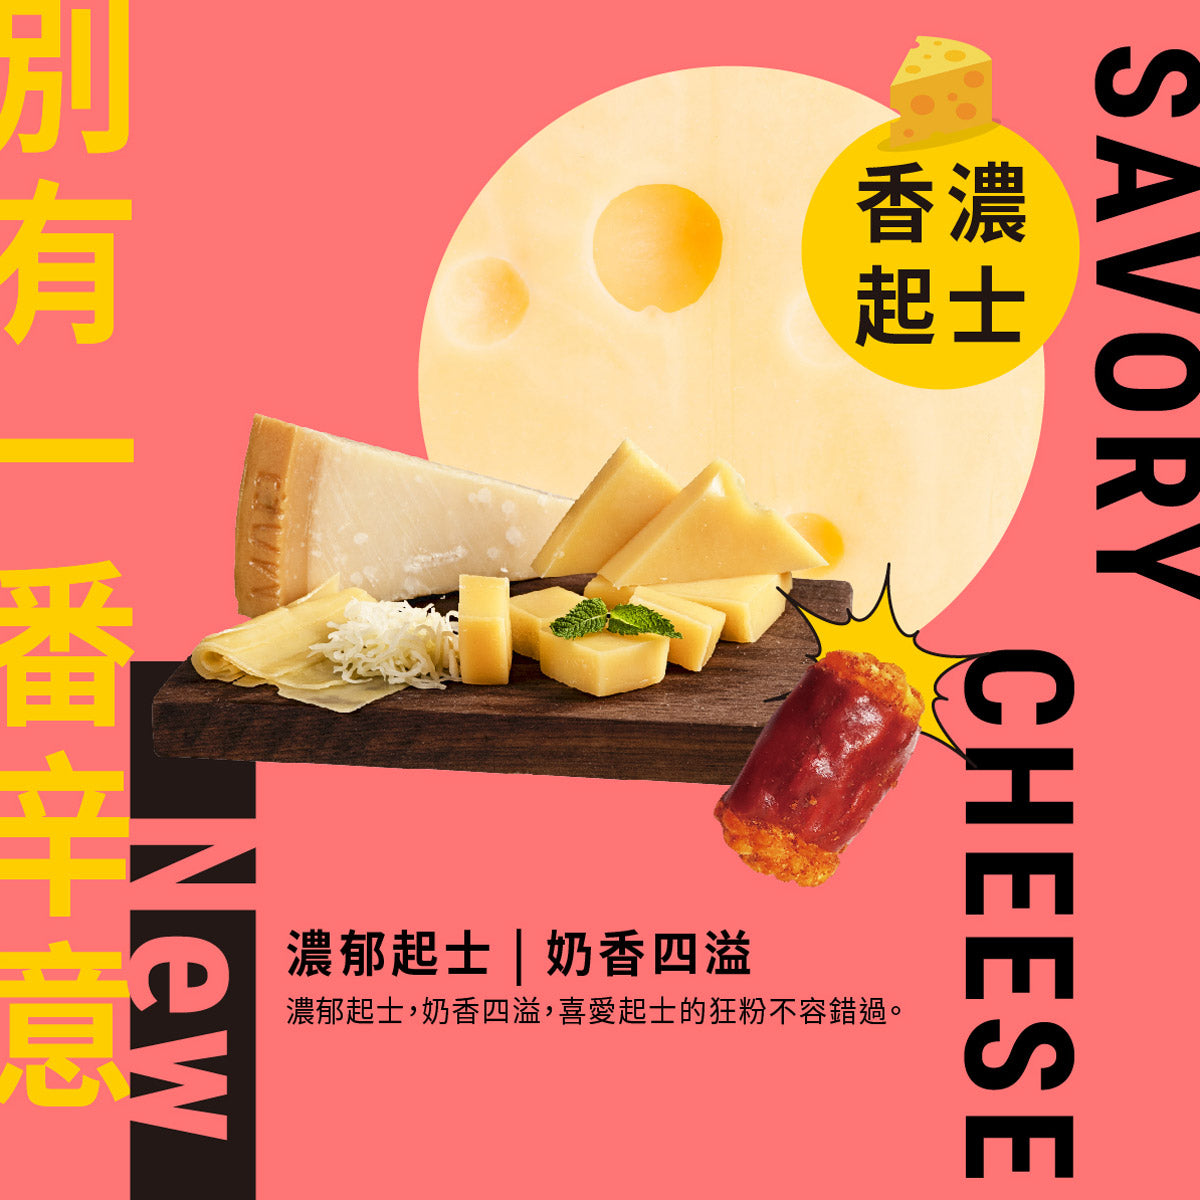 Crisp Chili - Cheese (200g)